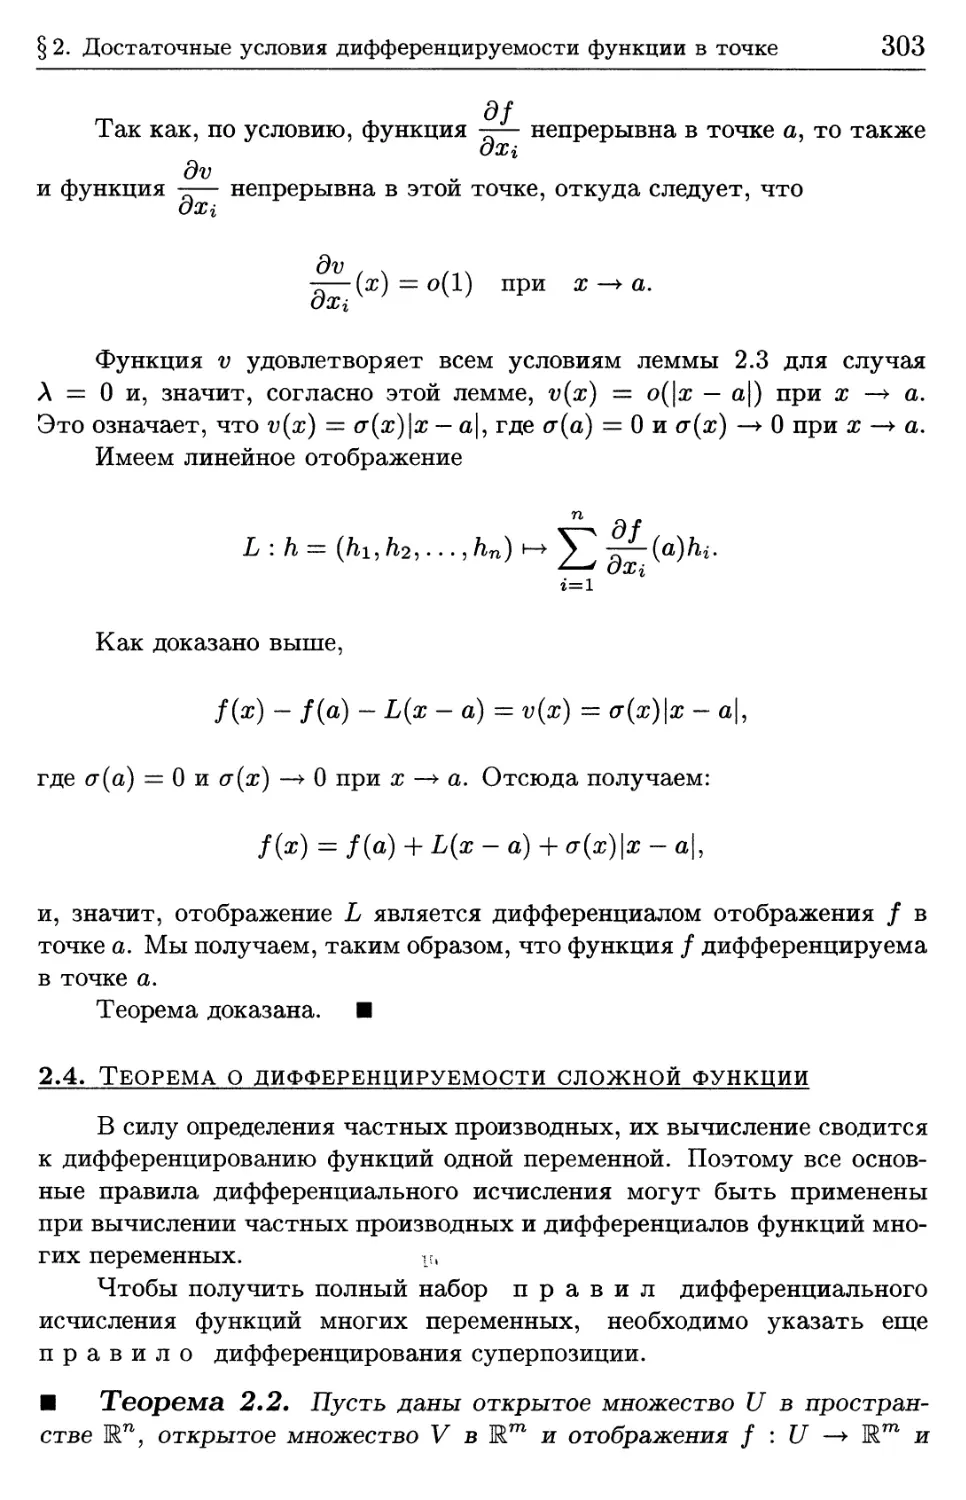 2.4. Теорема о дифференцируемости сложной функции